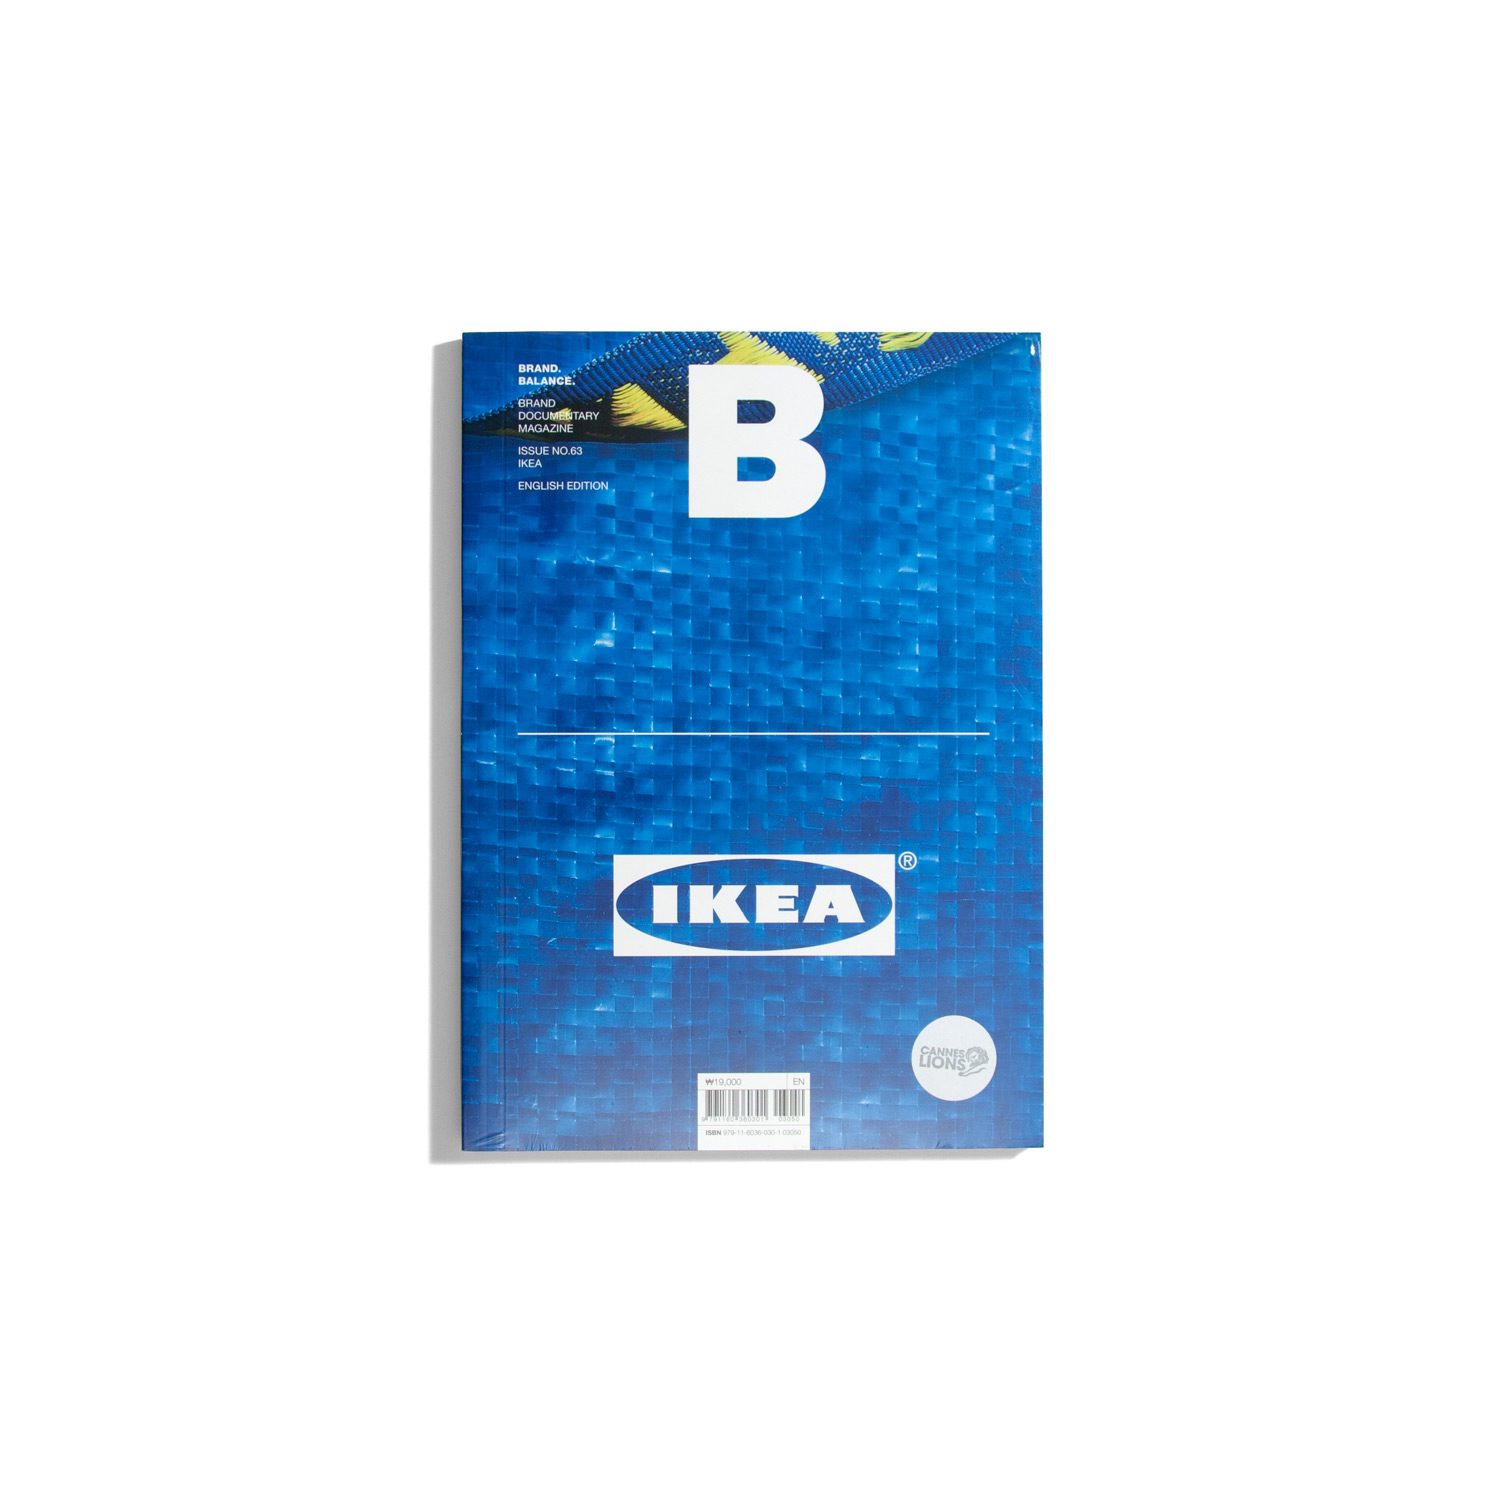 B Brand. Balance. #63 Ikea